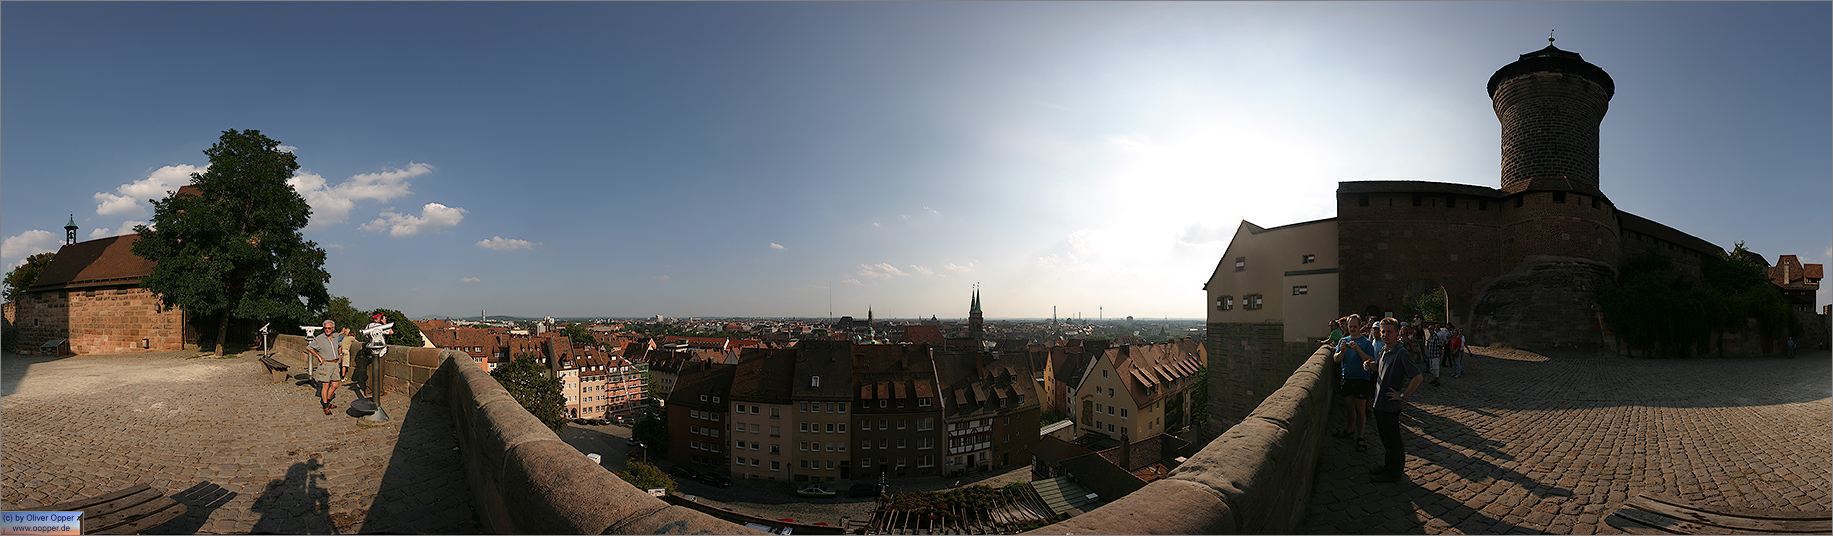 Panorama Nrnberg - Blick von der Burg ber die Stadt - p016 - (c) by Oliver Opper